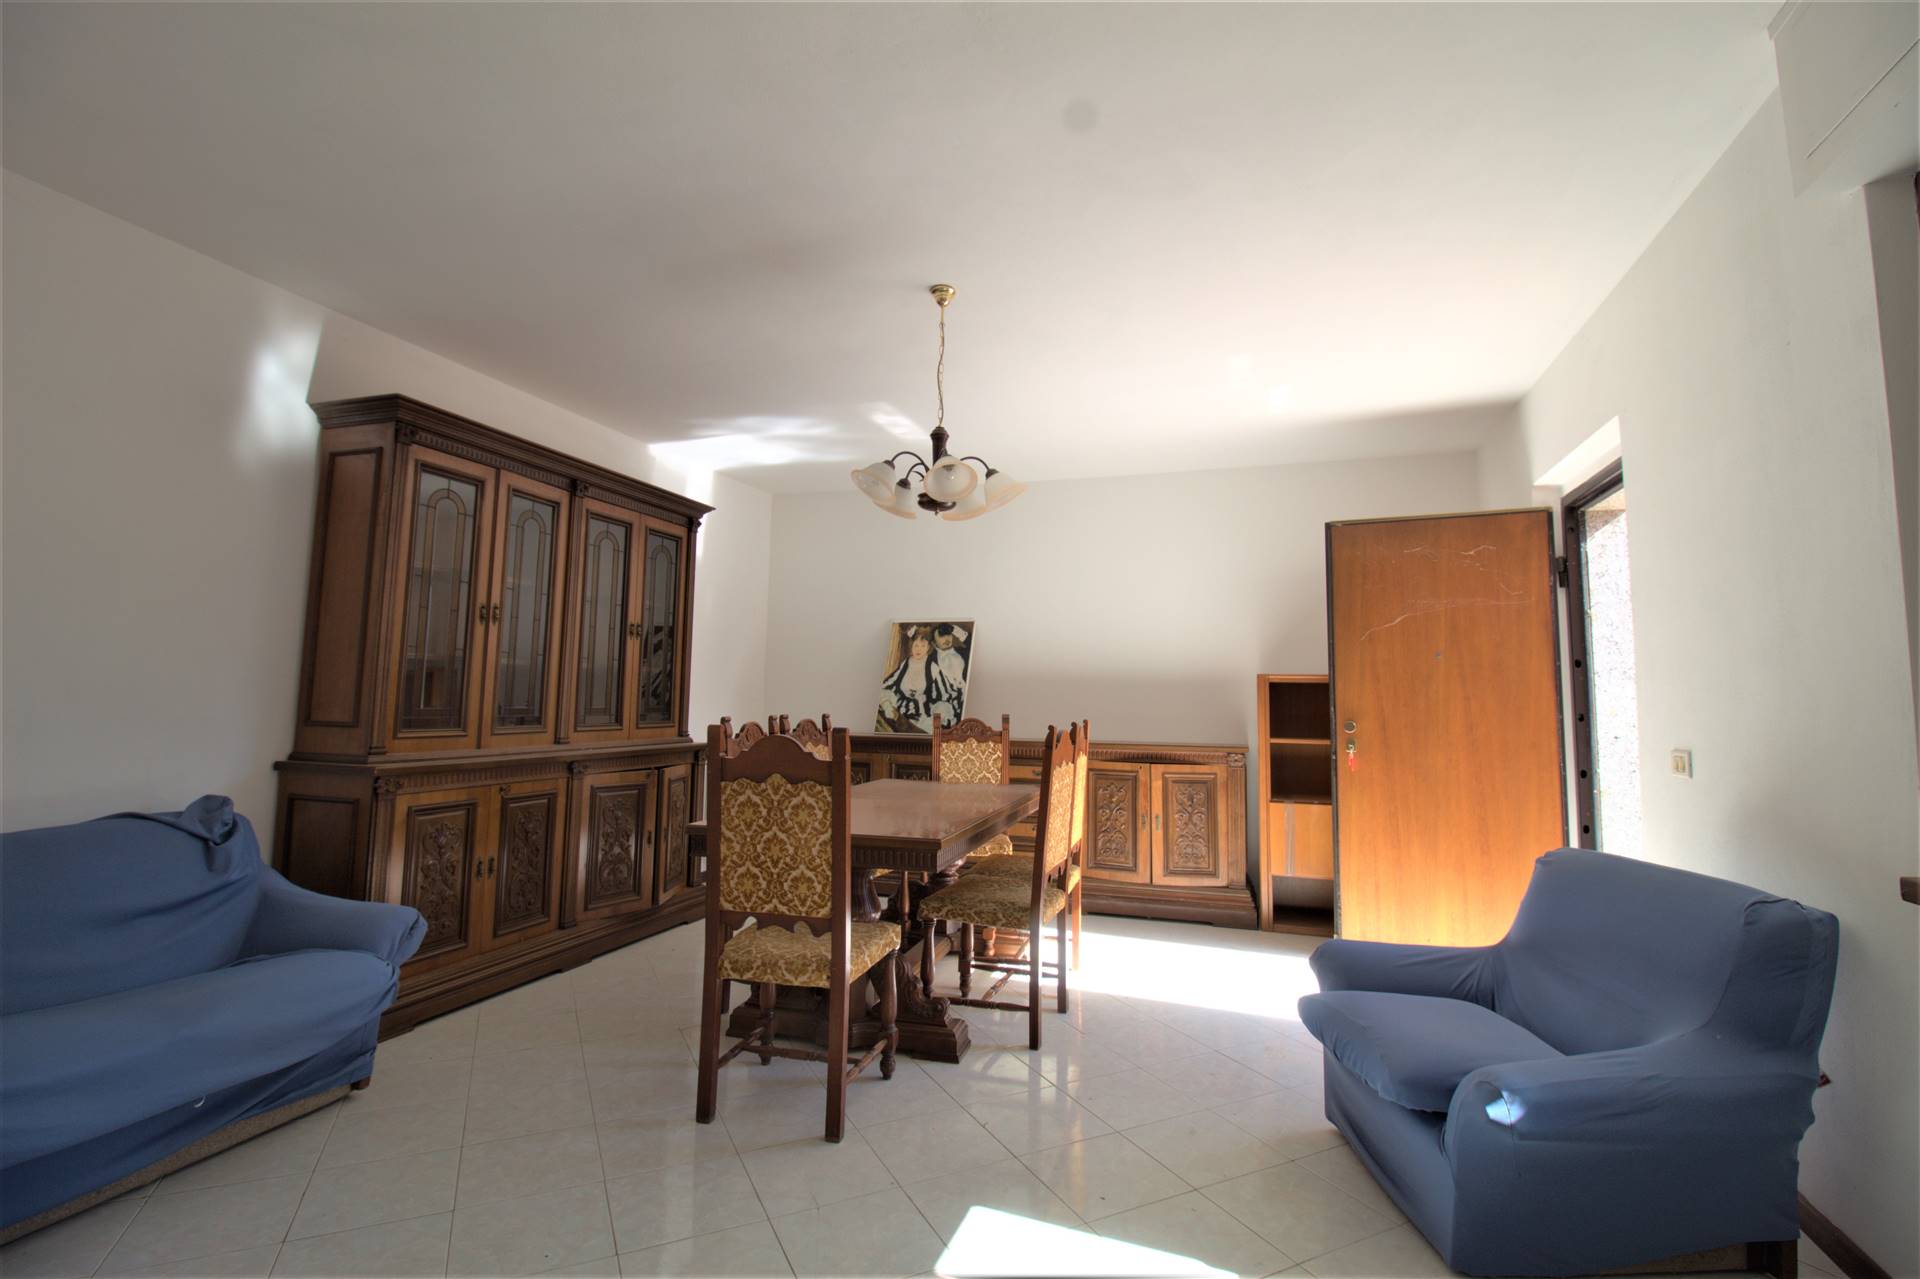 Appartamento in vendita a Comano, 5 locali, prezzo € 54.000 | PortaleAgenzieImmobiliari.it